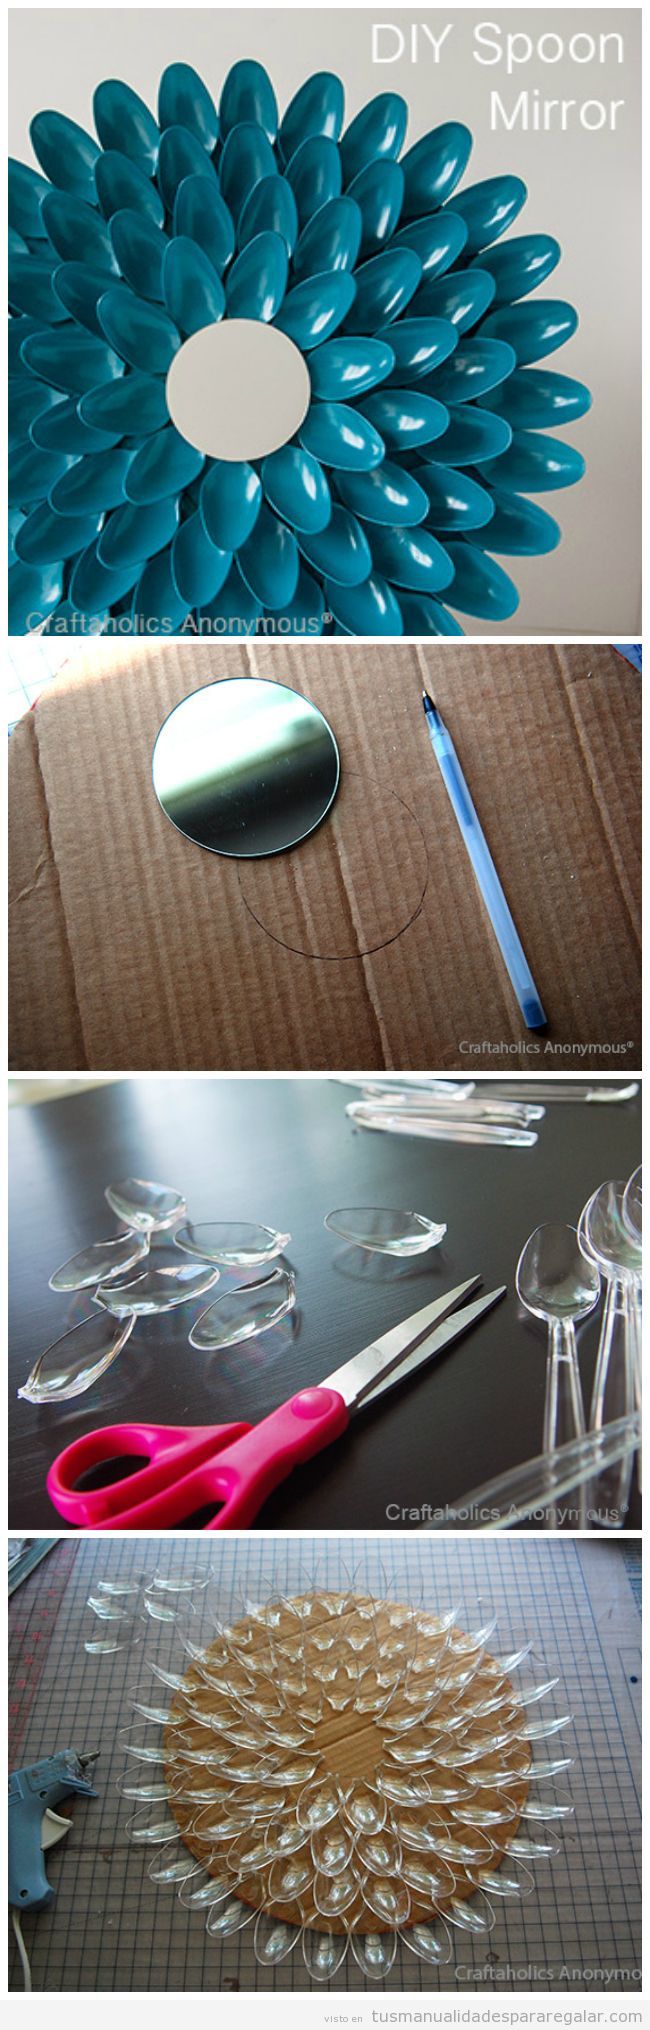 Regalos hechos a mano: espejo decorado con cucharas de plástico